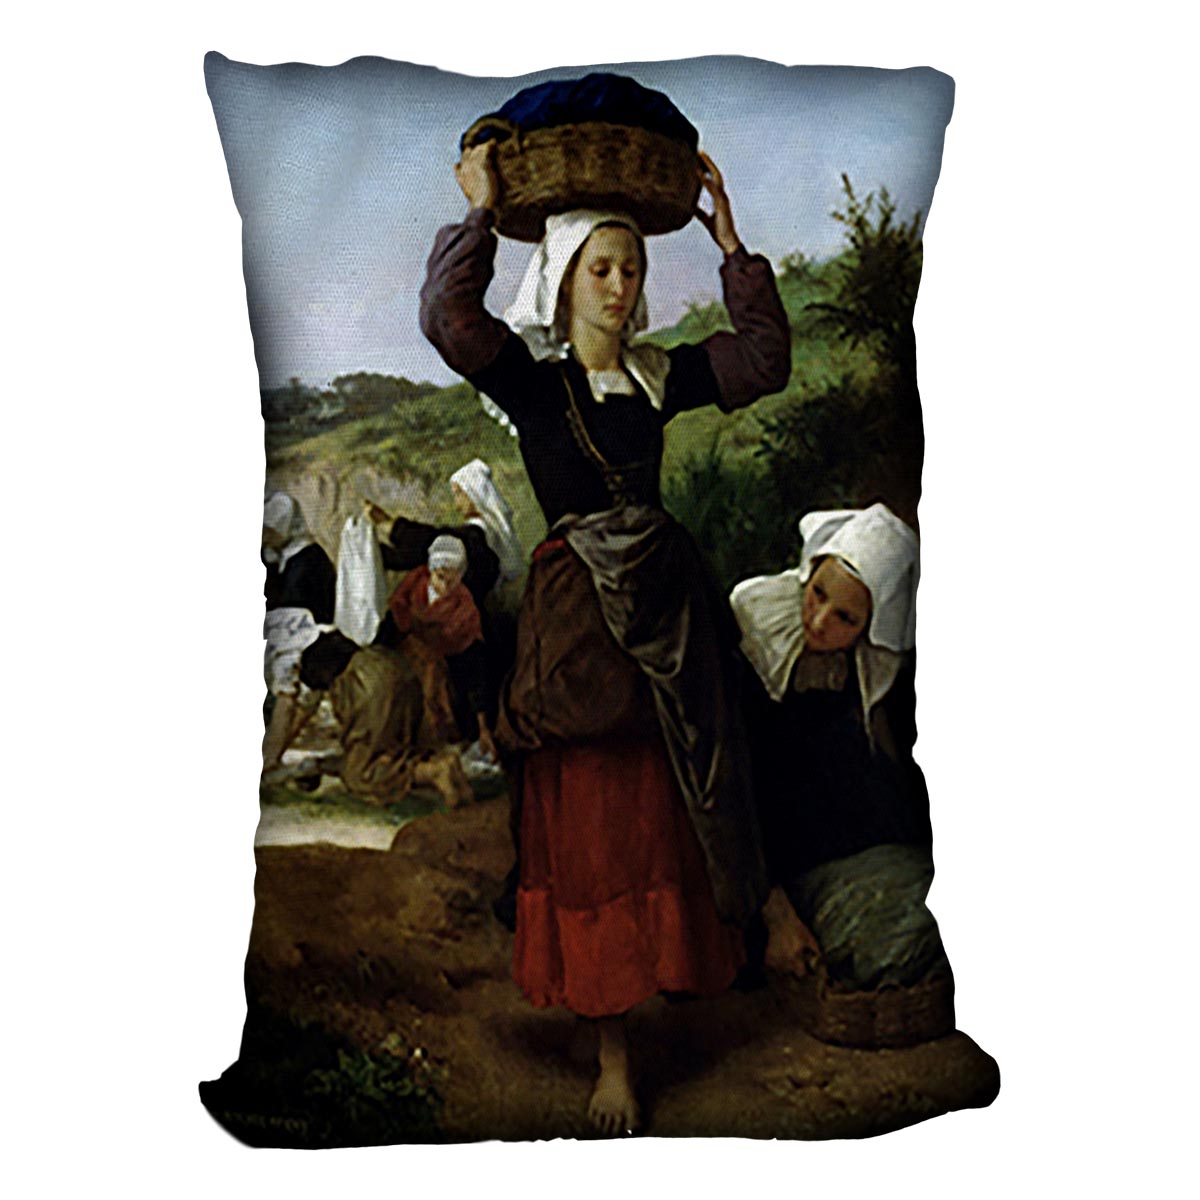 Washerwomen of Fouesnant By Bouguereau Cushion